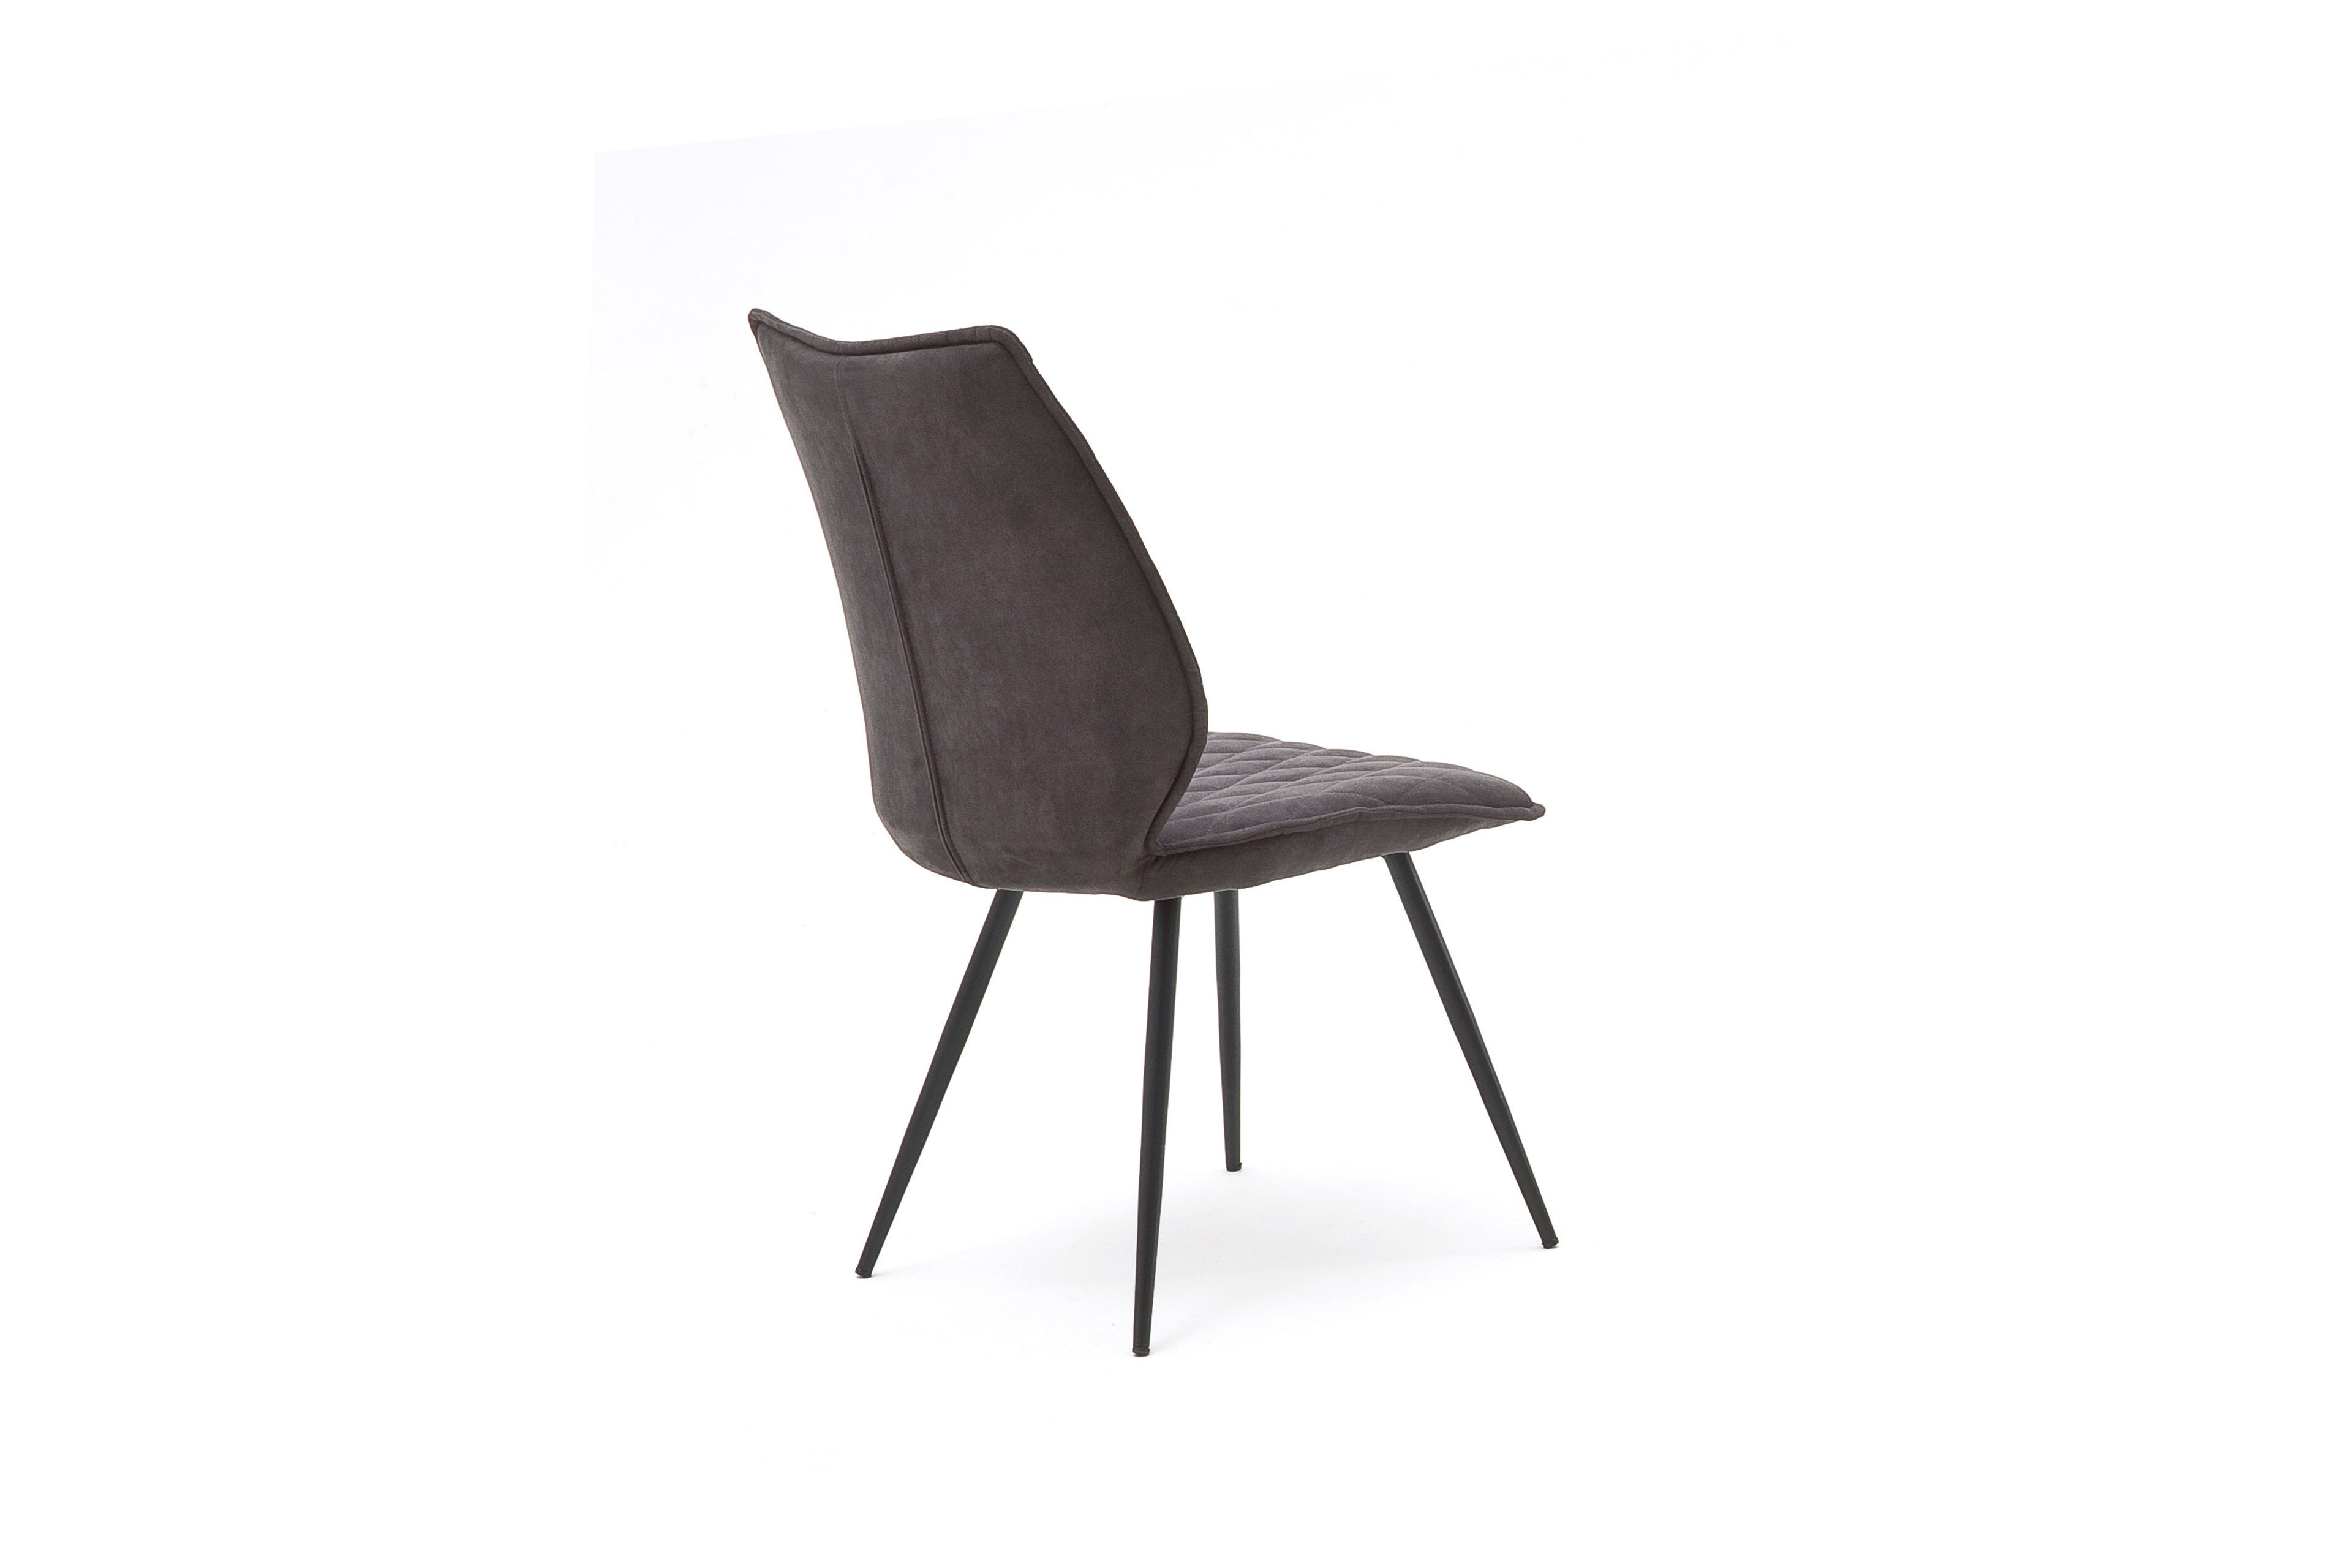 MCA furniture Stuhl Navarra in Anthrazit | Möbel Letz - Ihr Online-Shop